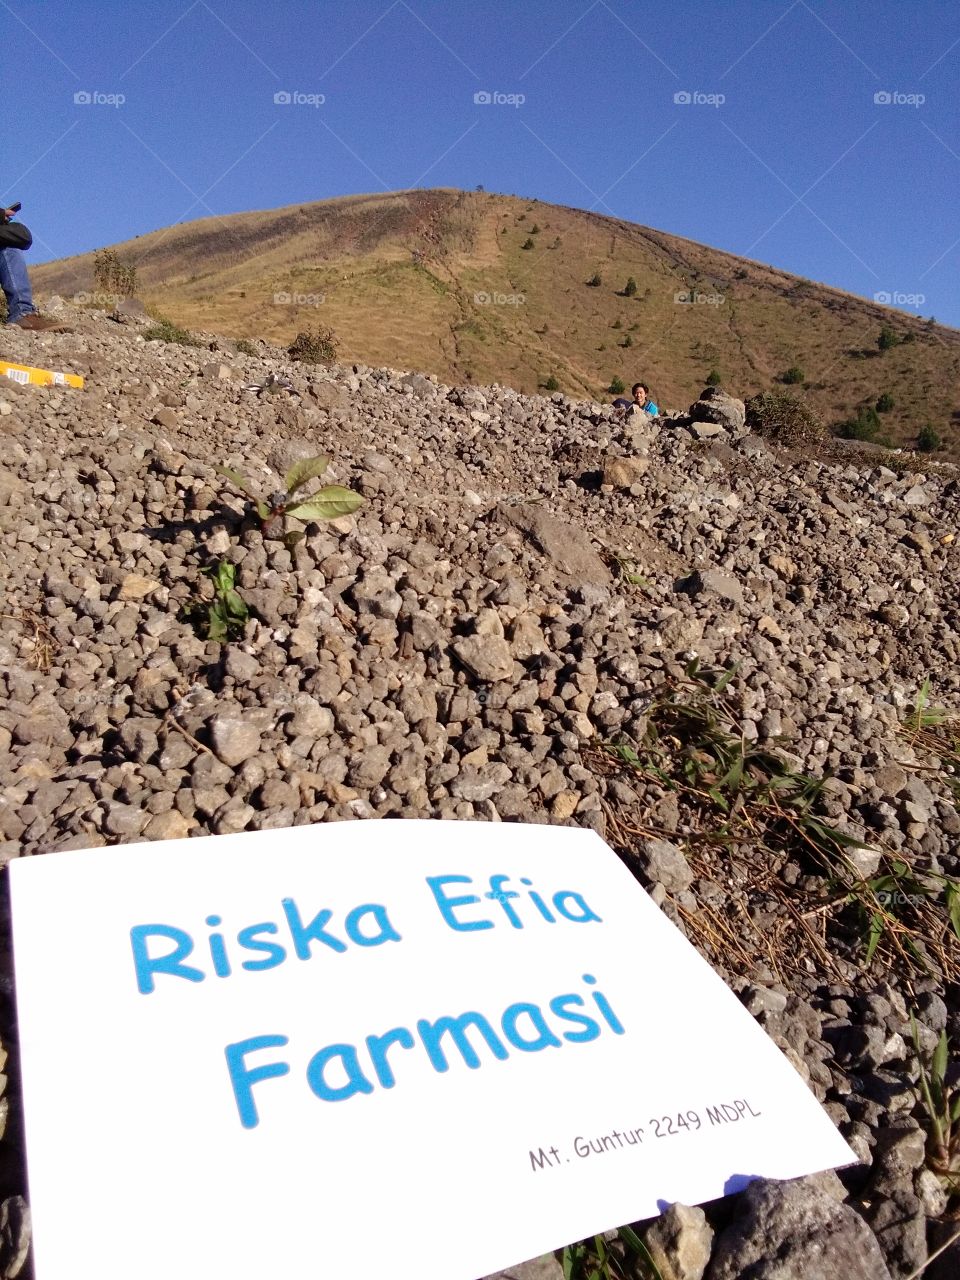 Riska Efia anak Farmasi dapat salam dari Gunung Guntur 2249 Mdpl 
Kapan Muncak Bareng...